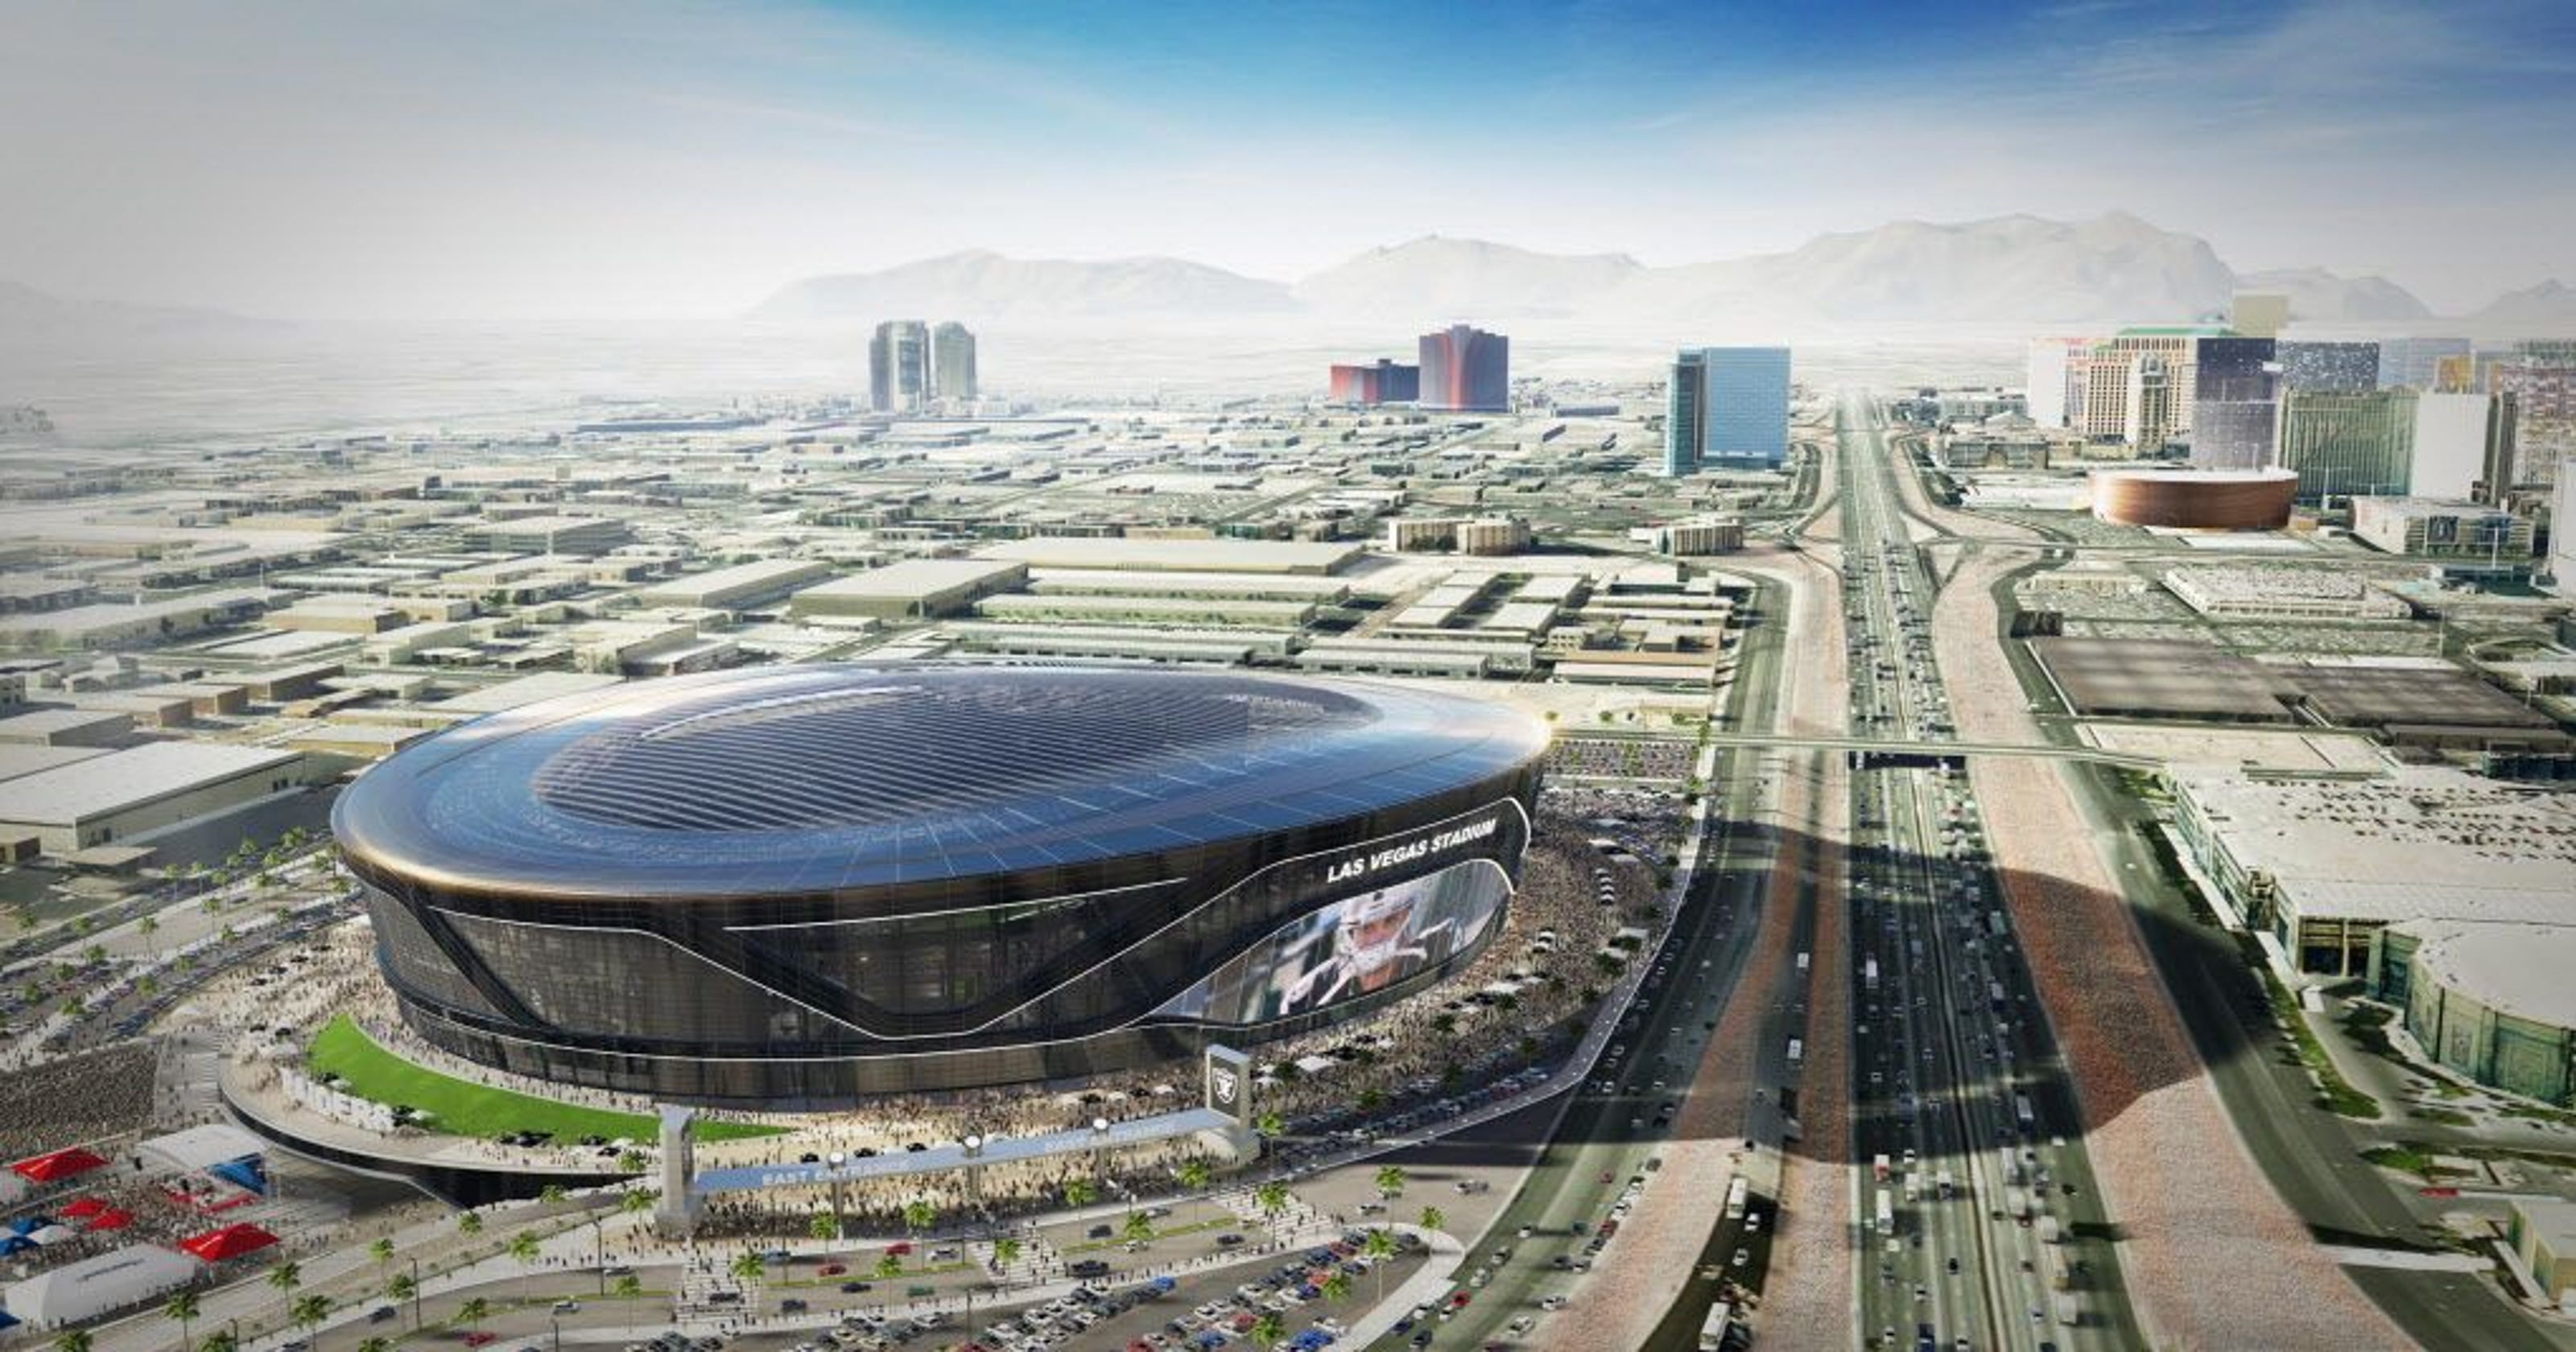 Raiders, UNLV working on deal to use planned Las Vegas stadium3200 x 1680